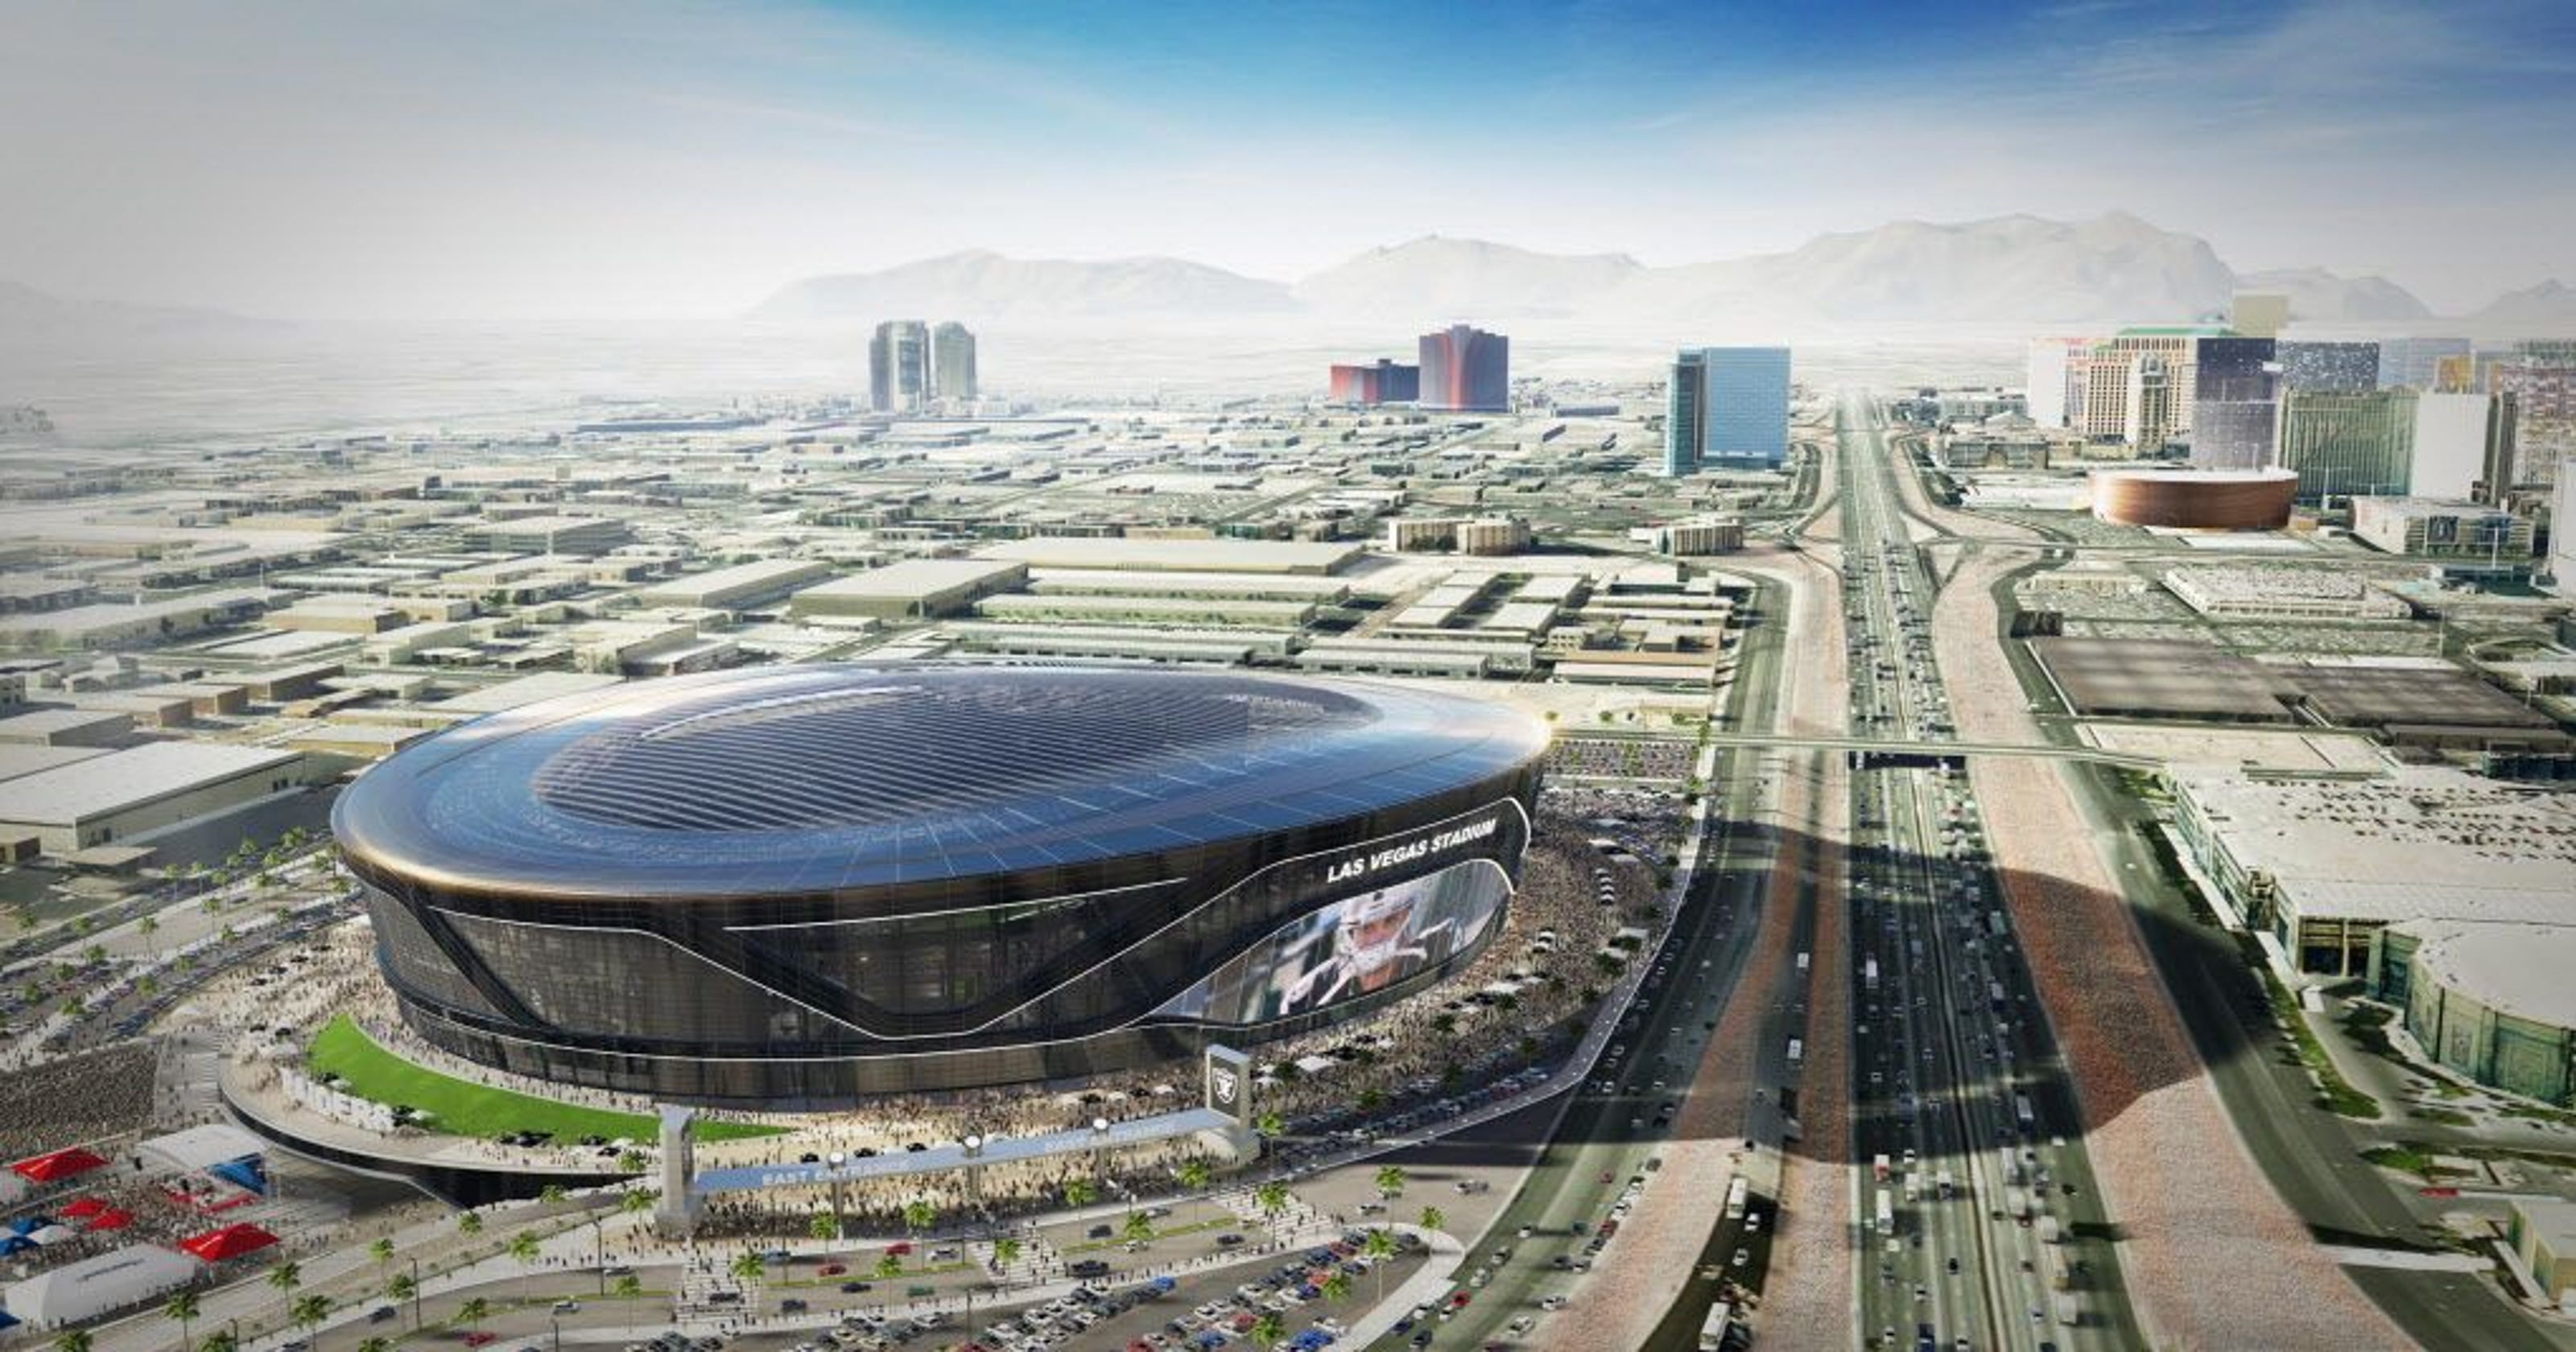 Raiders, UNLV working on deal to use planned Las Vegas stadium3200 x 1680